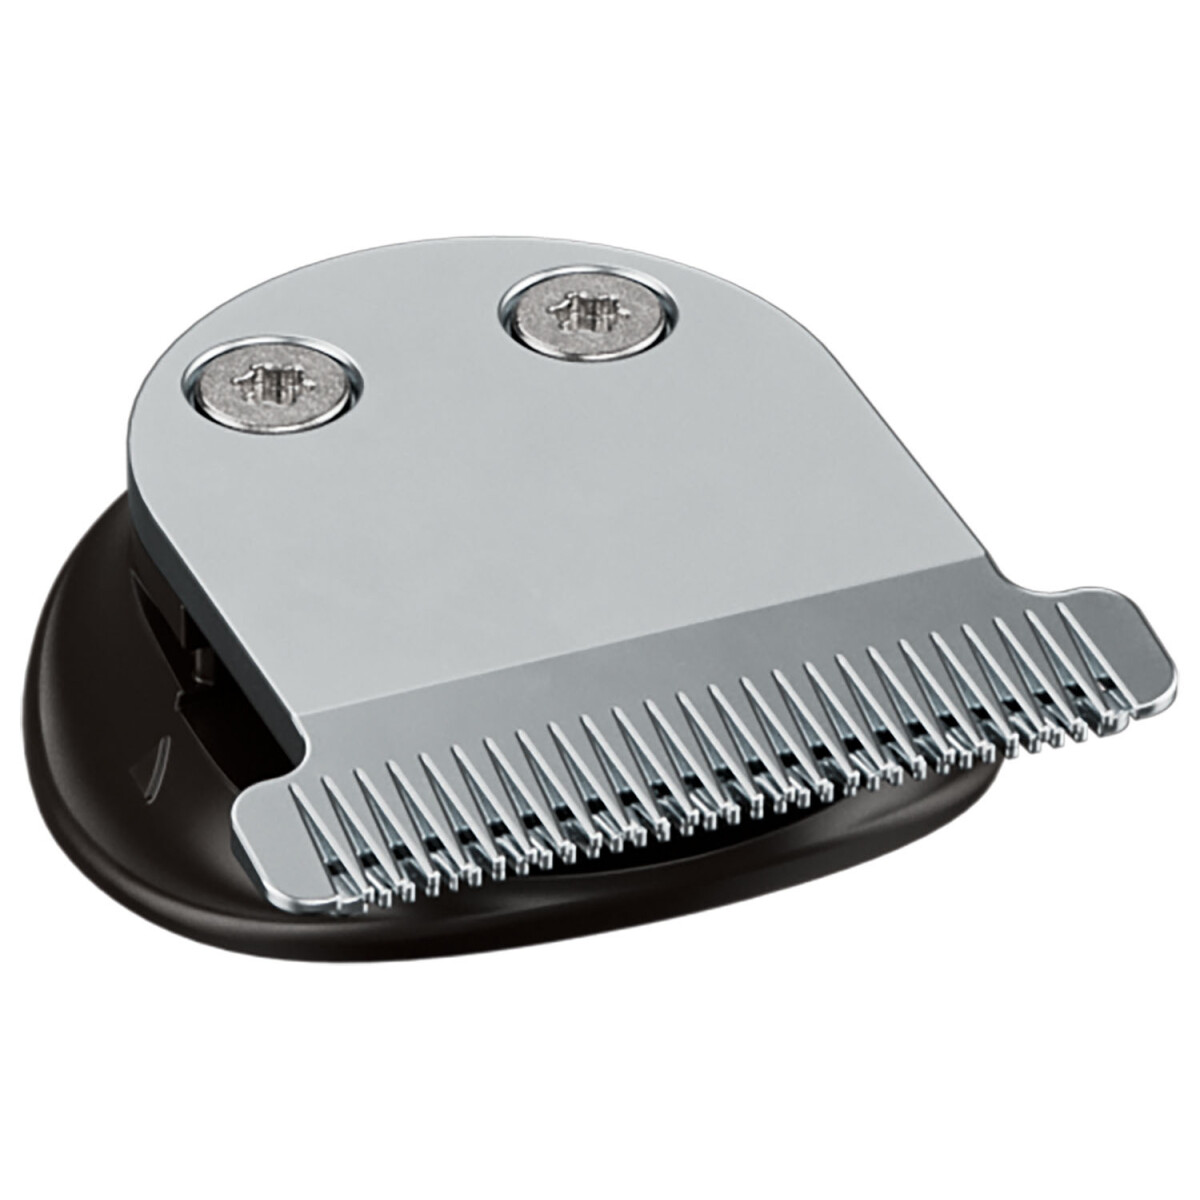 SILVERCREST® PERSONAL CARE Haar- und Bartschneider »SHBS 3.7 D5«, 5-in-1 -  B-Ware neuwertig, 15,99 €